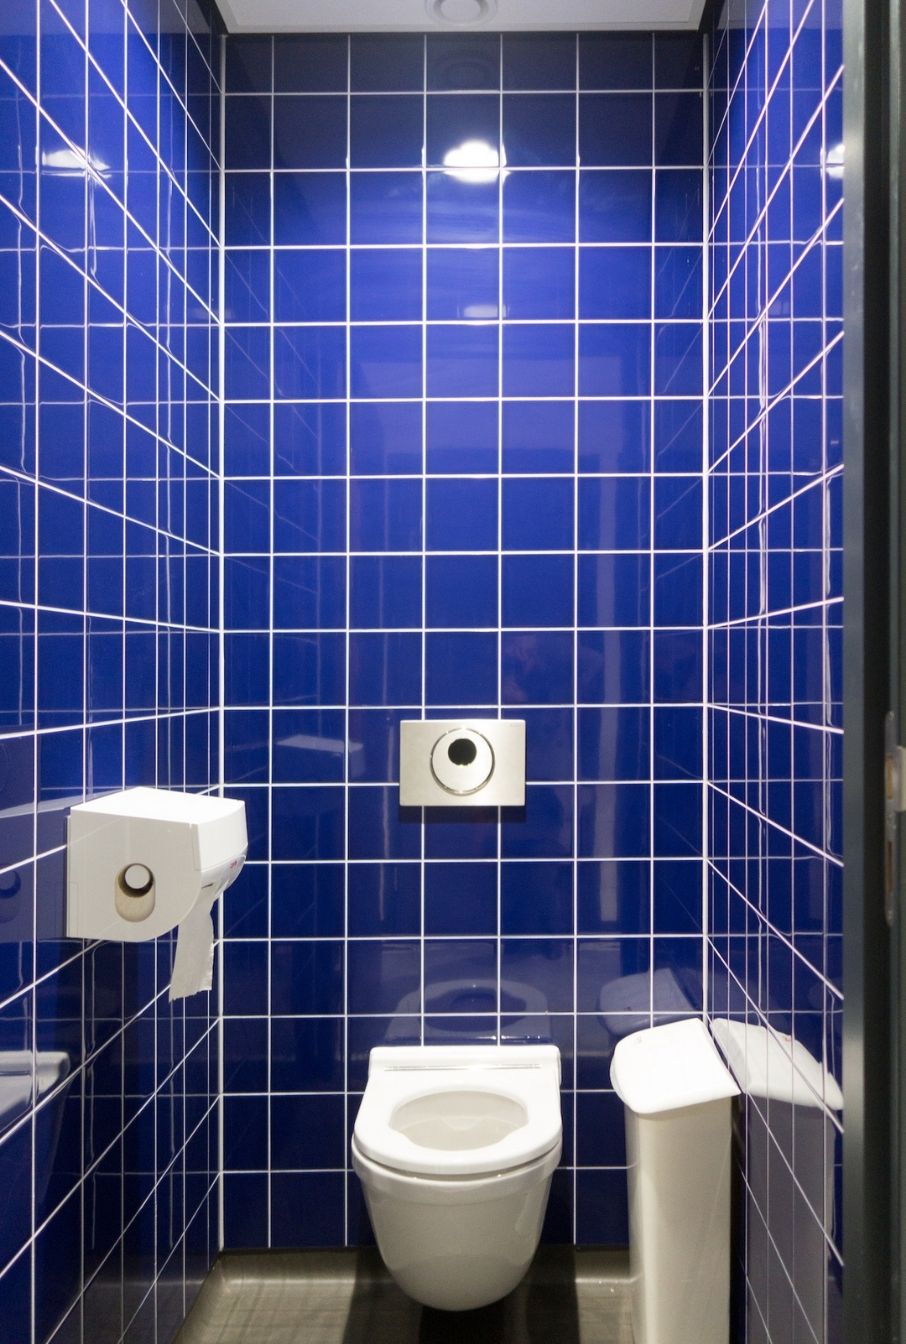 AG architecten renovatie universiteitsbibliotheek Groningen toilet